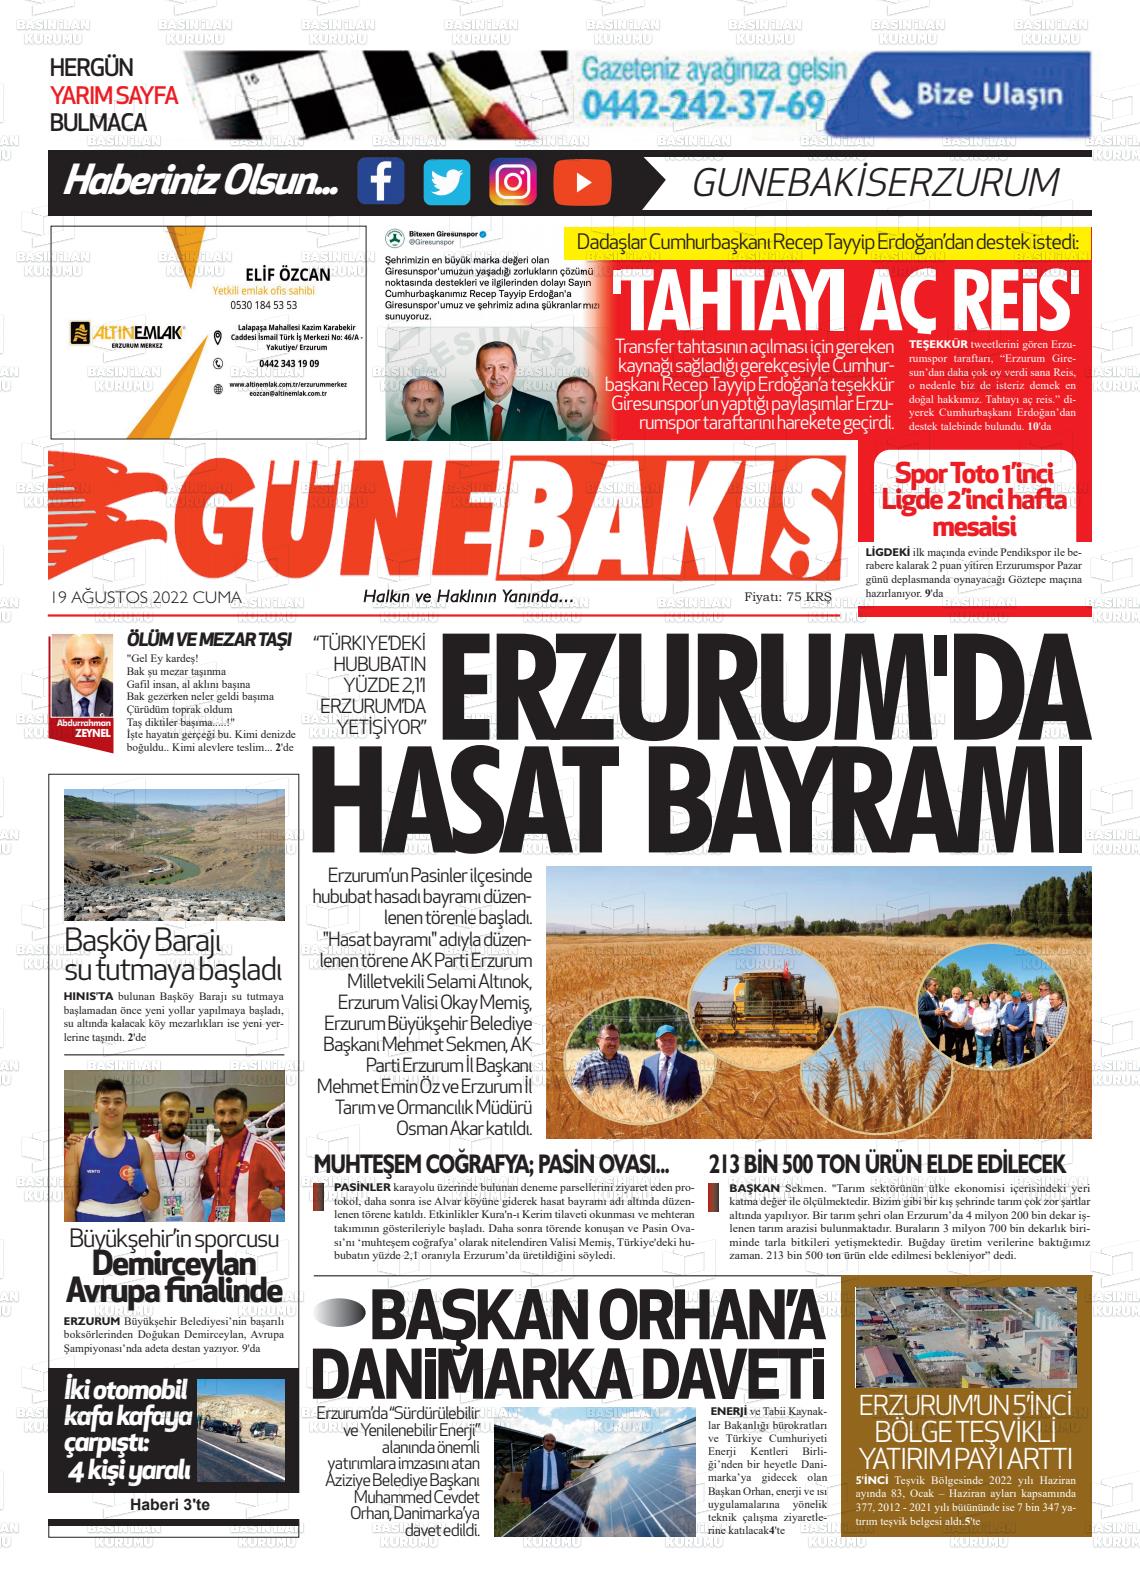 19 Ağustos 2022 Erzurum Günebakış Gazete Manşeti